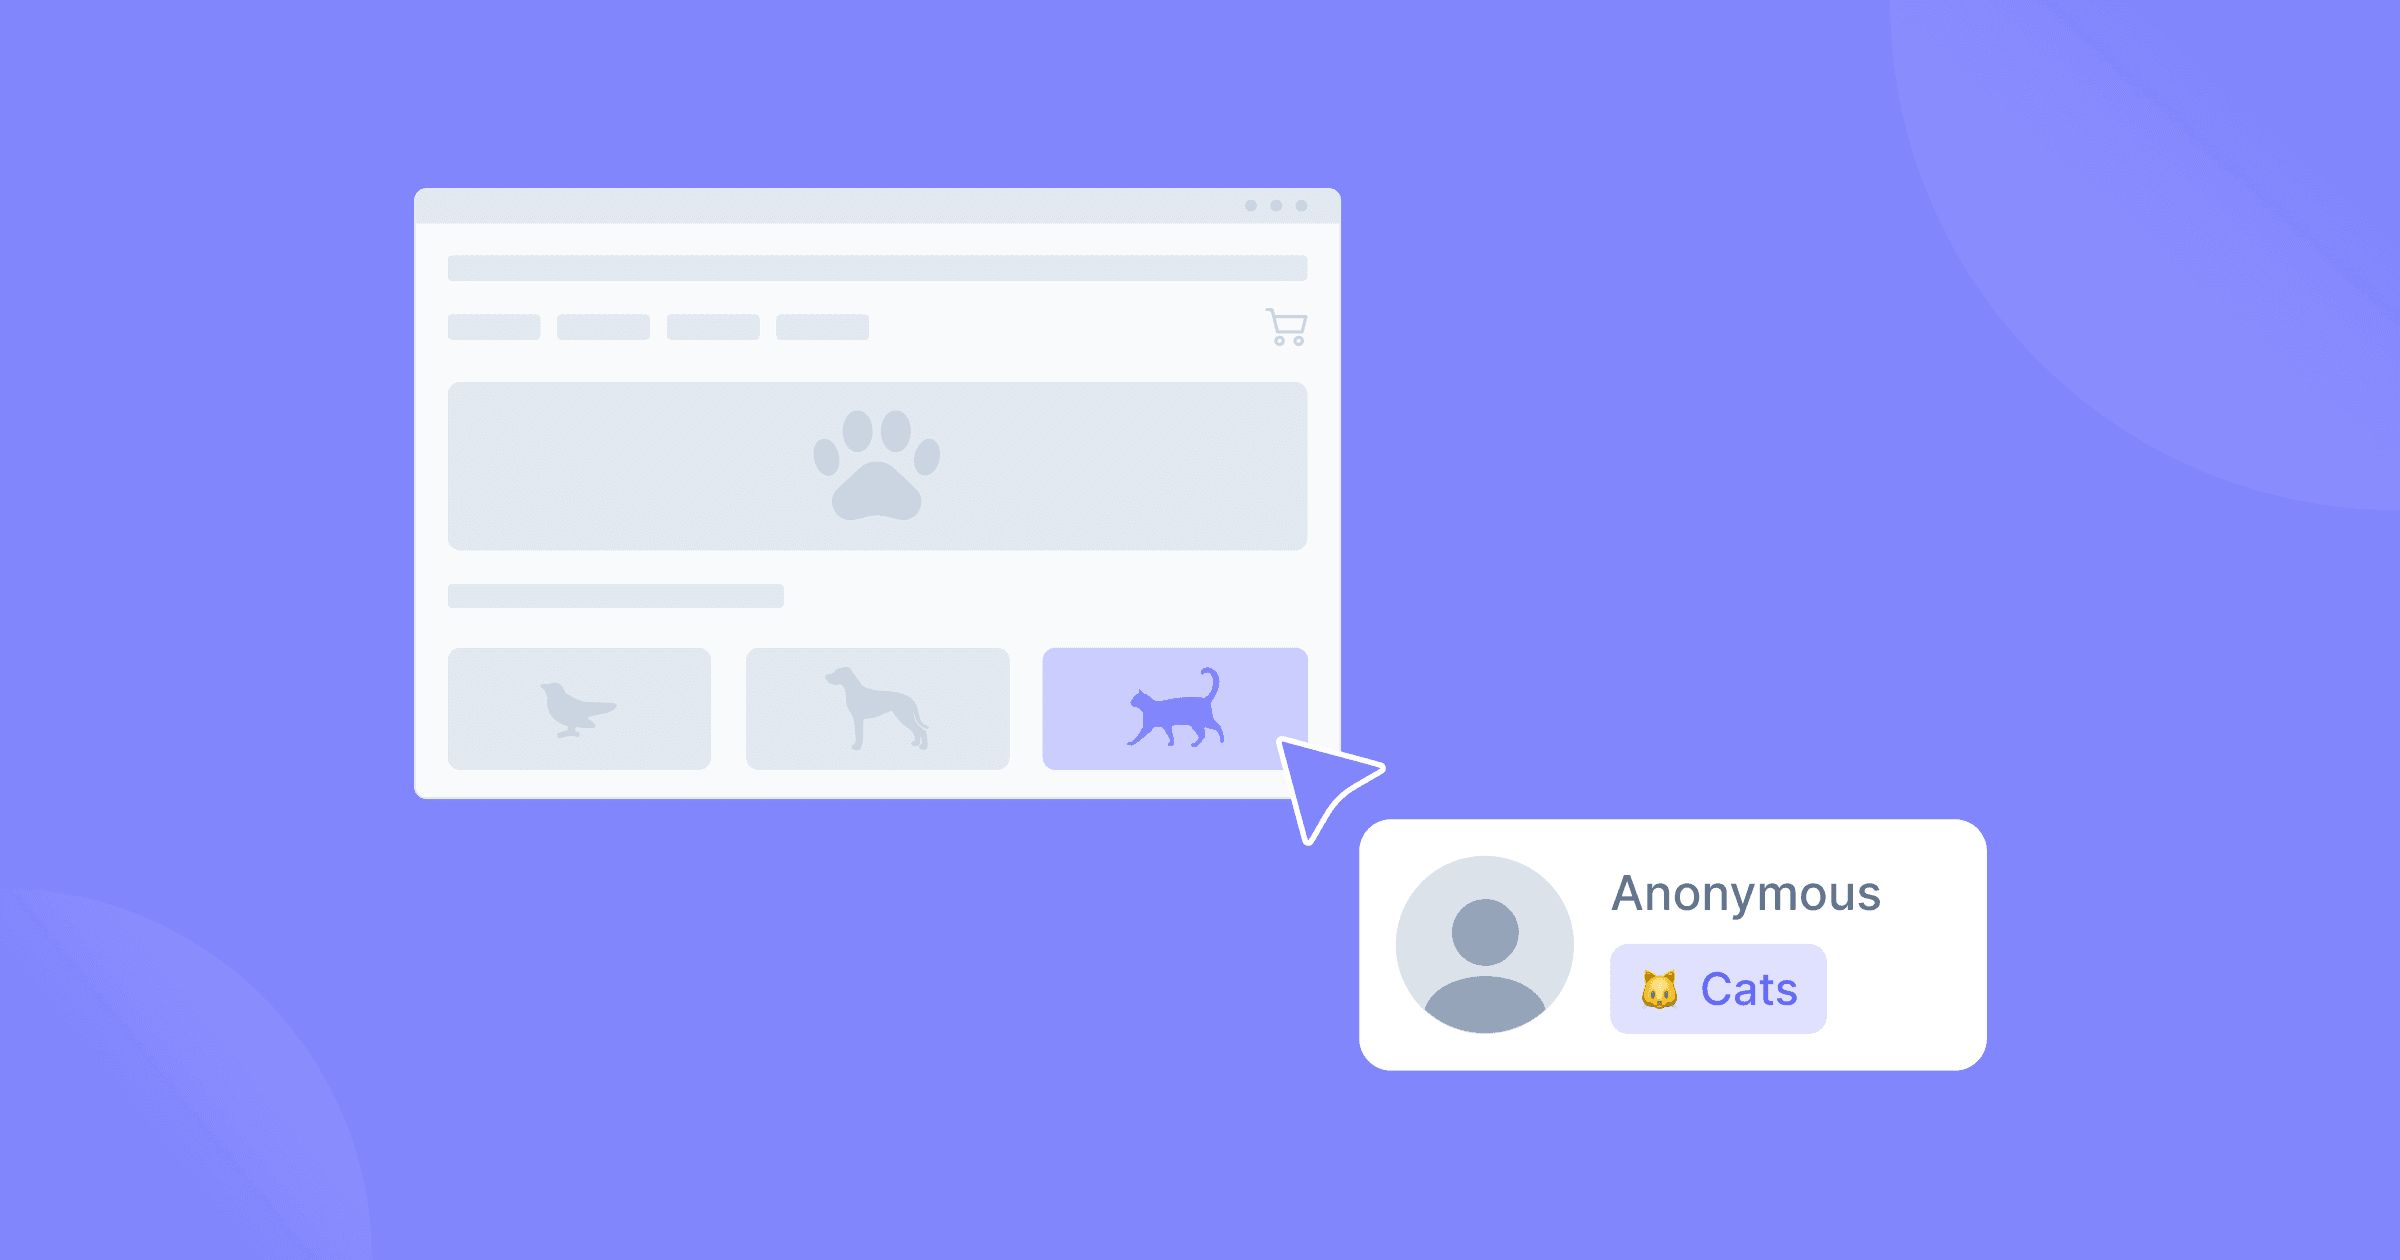 Wireframe de ecommerce de pet shop com cards correspondentes a diferentes pets. Um usuário anônimo interessado em gatos é representado por um cursor, um avatar e um emoji de gato.